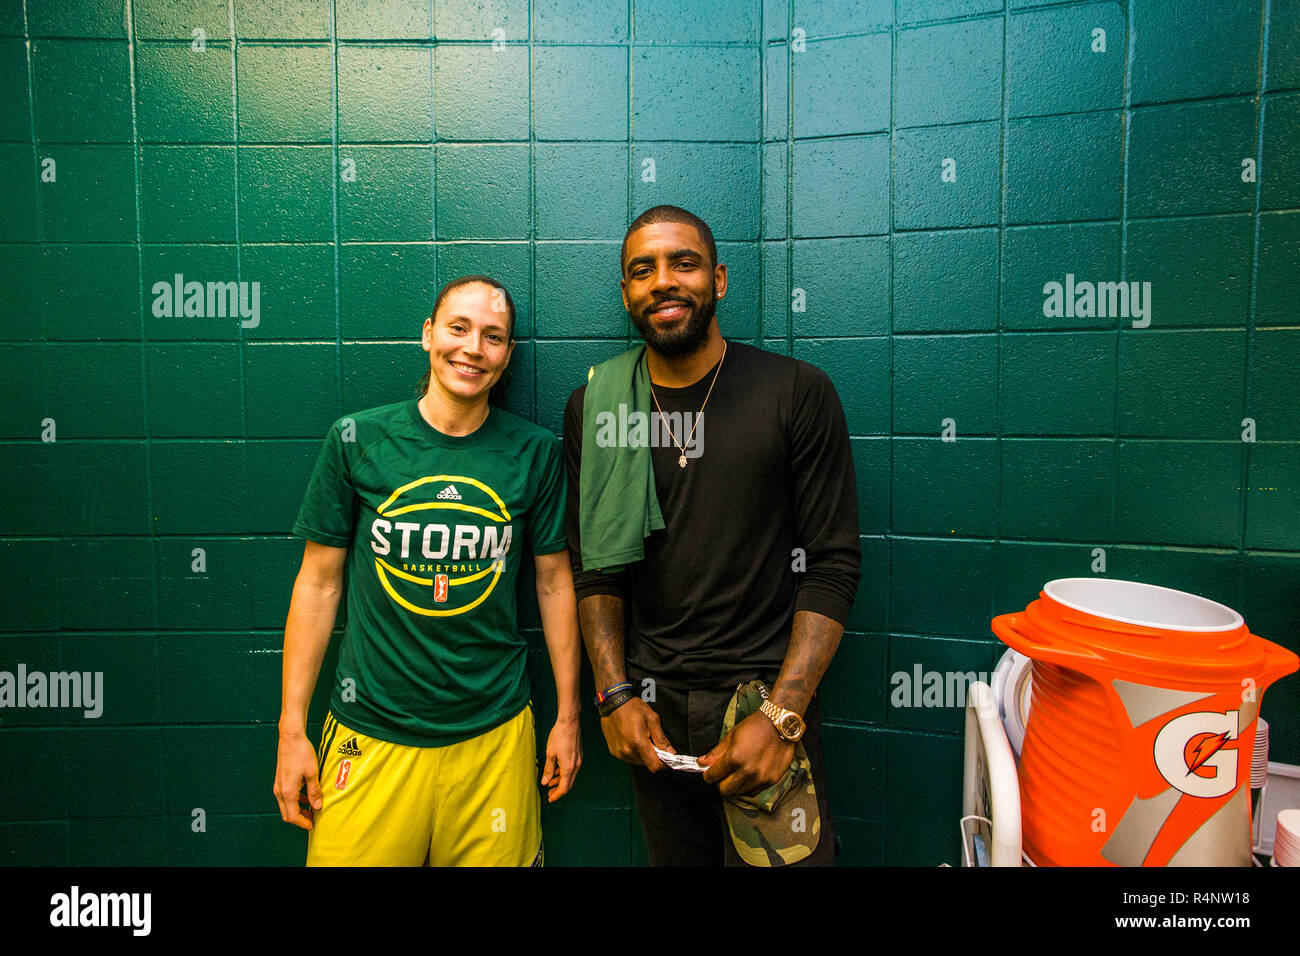 Retrato de dos jugadores de baloncesto sonriente, Seattle, Estado de Washington, EE.UU. Foto de stock